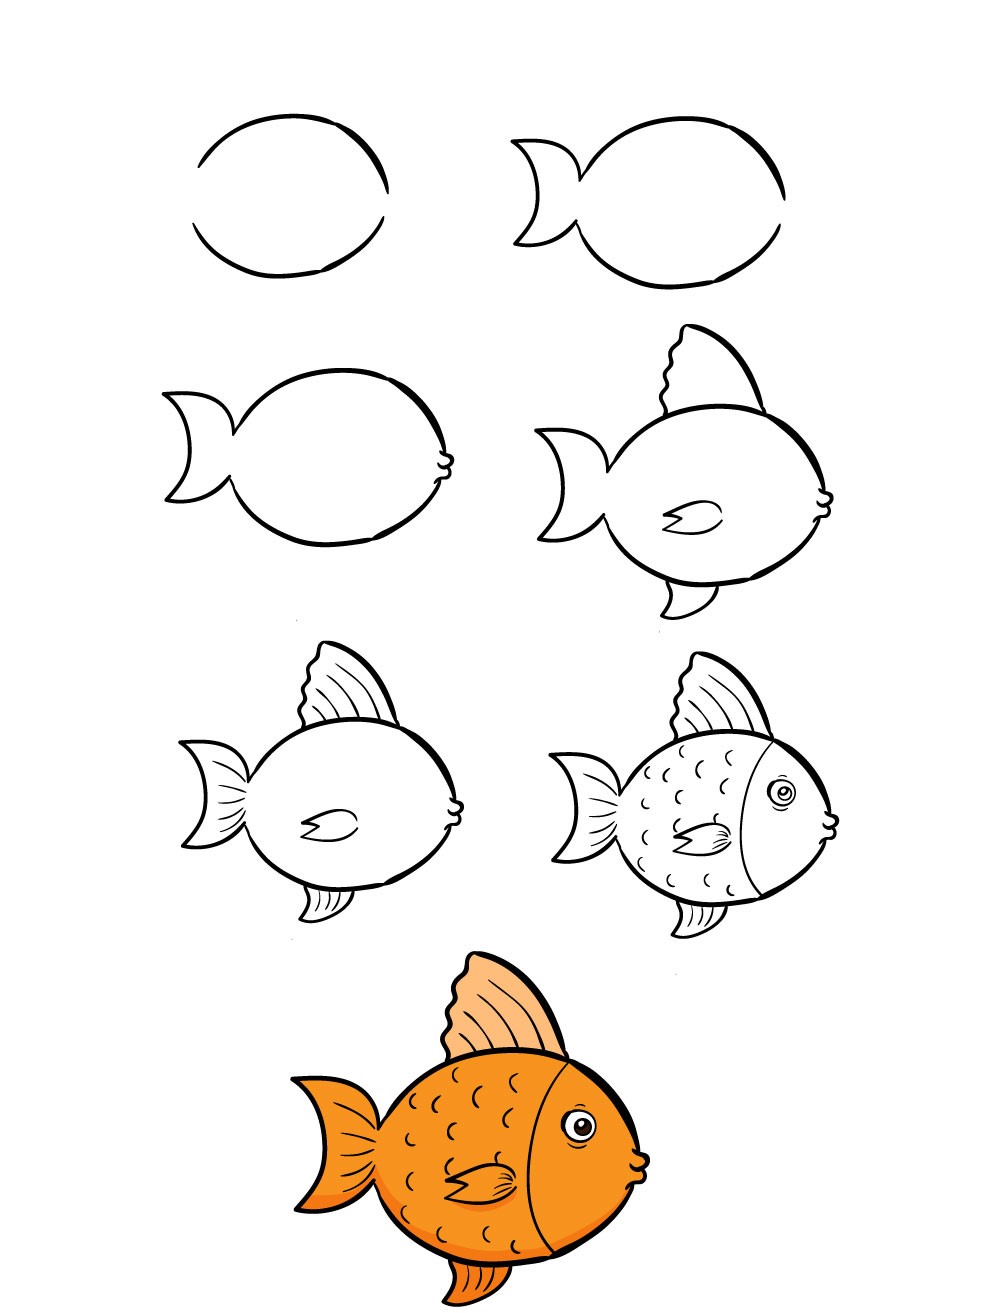 Vẽ cá cho bé: Tạo niềm vui và hứng thú cho bé yêu của bạn với việc vẽ con cá đáng yêu. Đây không chỉ là một hoạt động thú vị mà còn giúp bé phát triển tư duy sáng tạo và khả năng giải quyết vấn đề. Hãy cùng bé tạo nên những ký ức đáng nhớ và thú vị nhé!